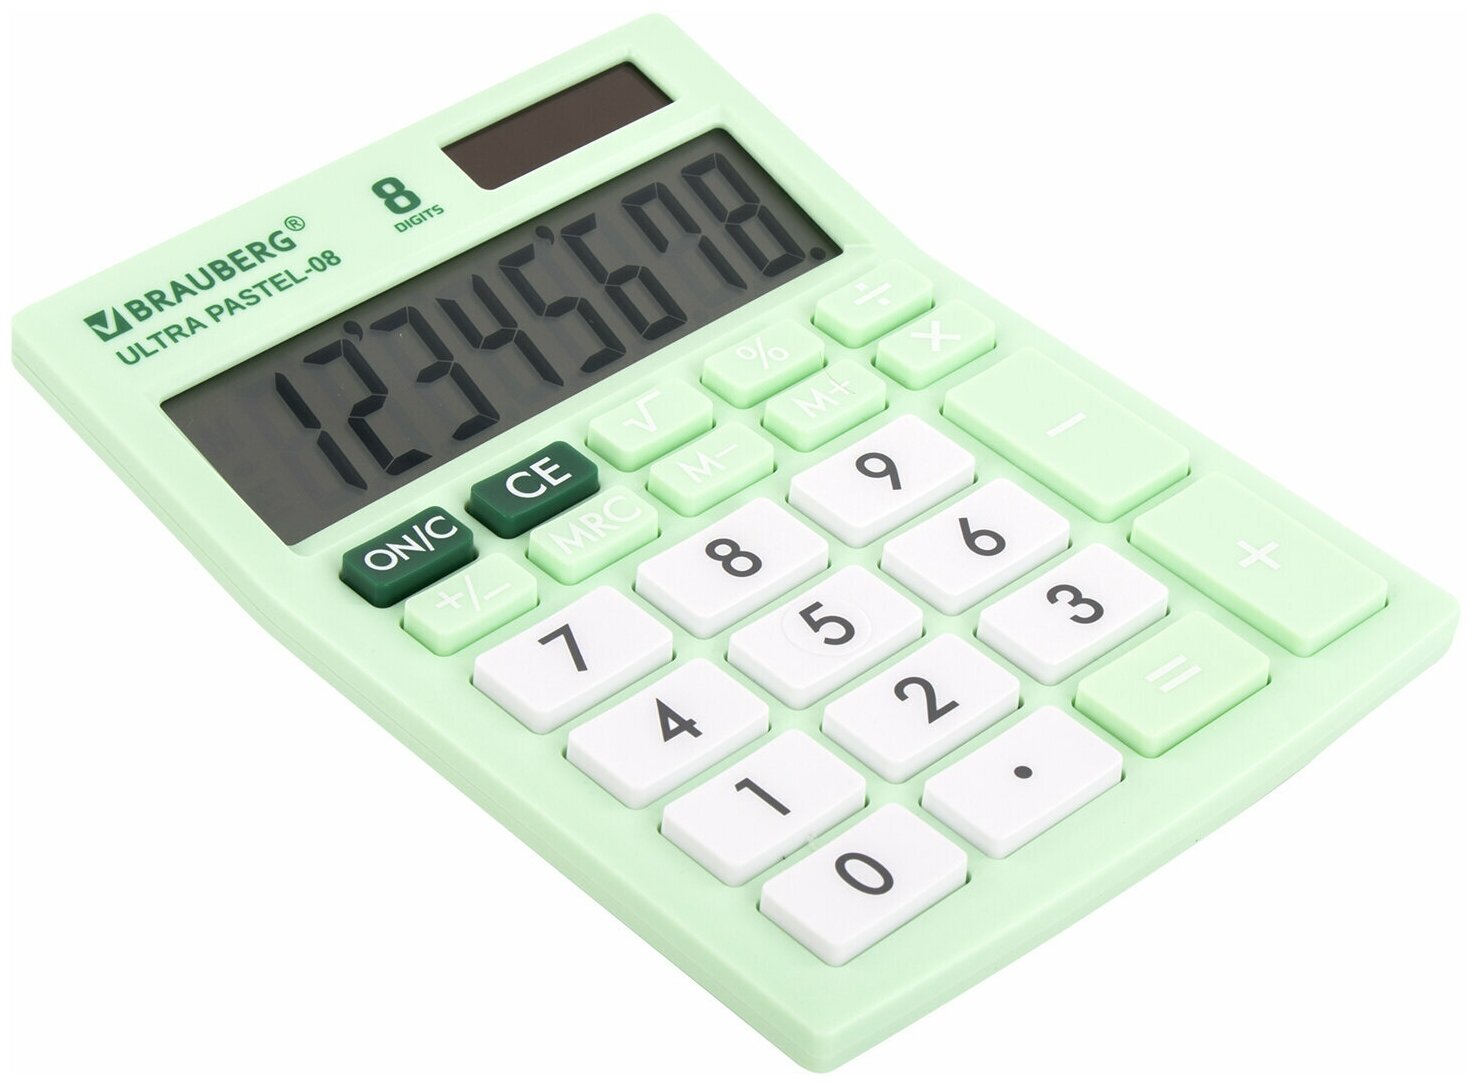 Калькулятор настольный BRAUBERG ULTRA PASTEL-08-LG, компактный (154x115 мм), 8 разрядов, двойное питание, мятный, 250515